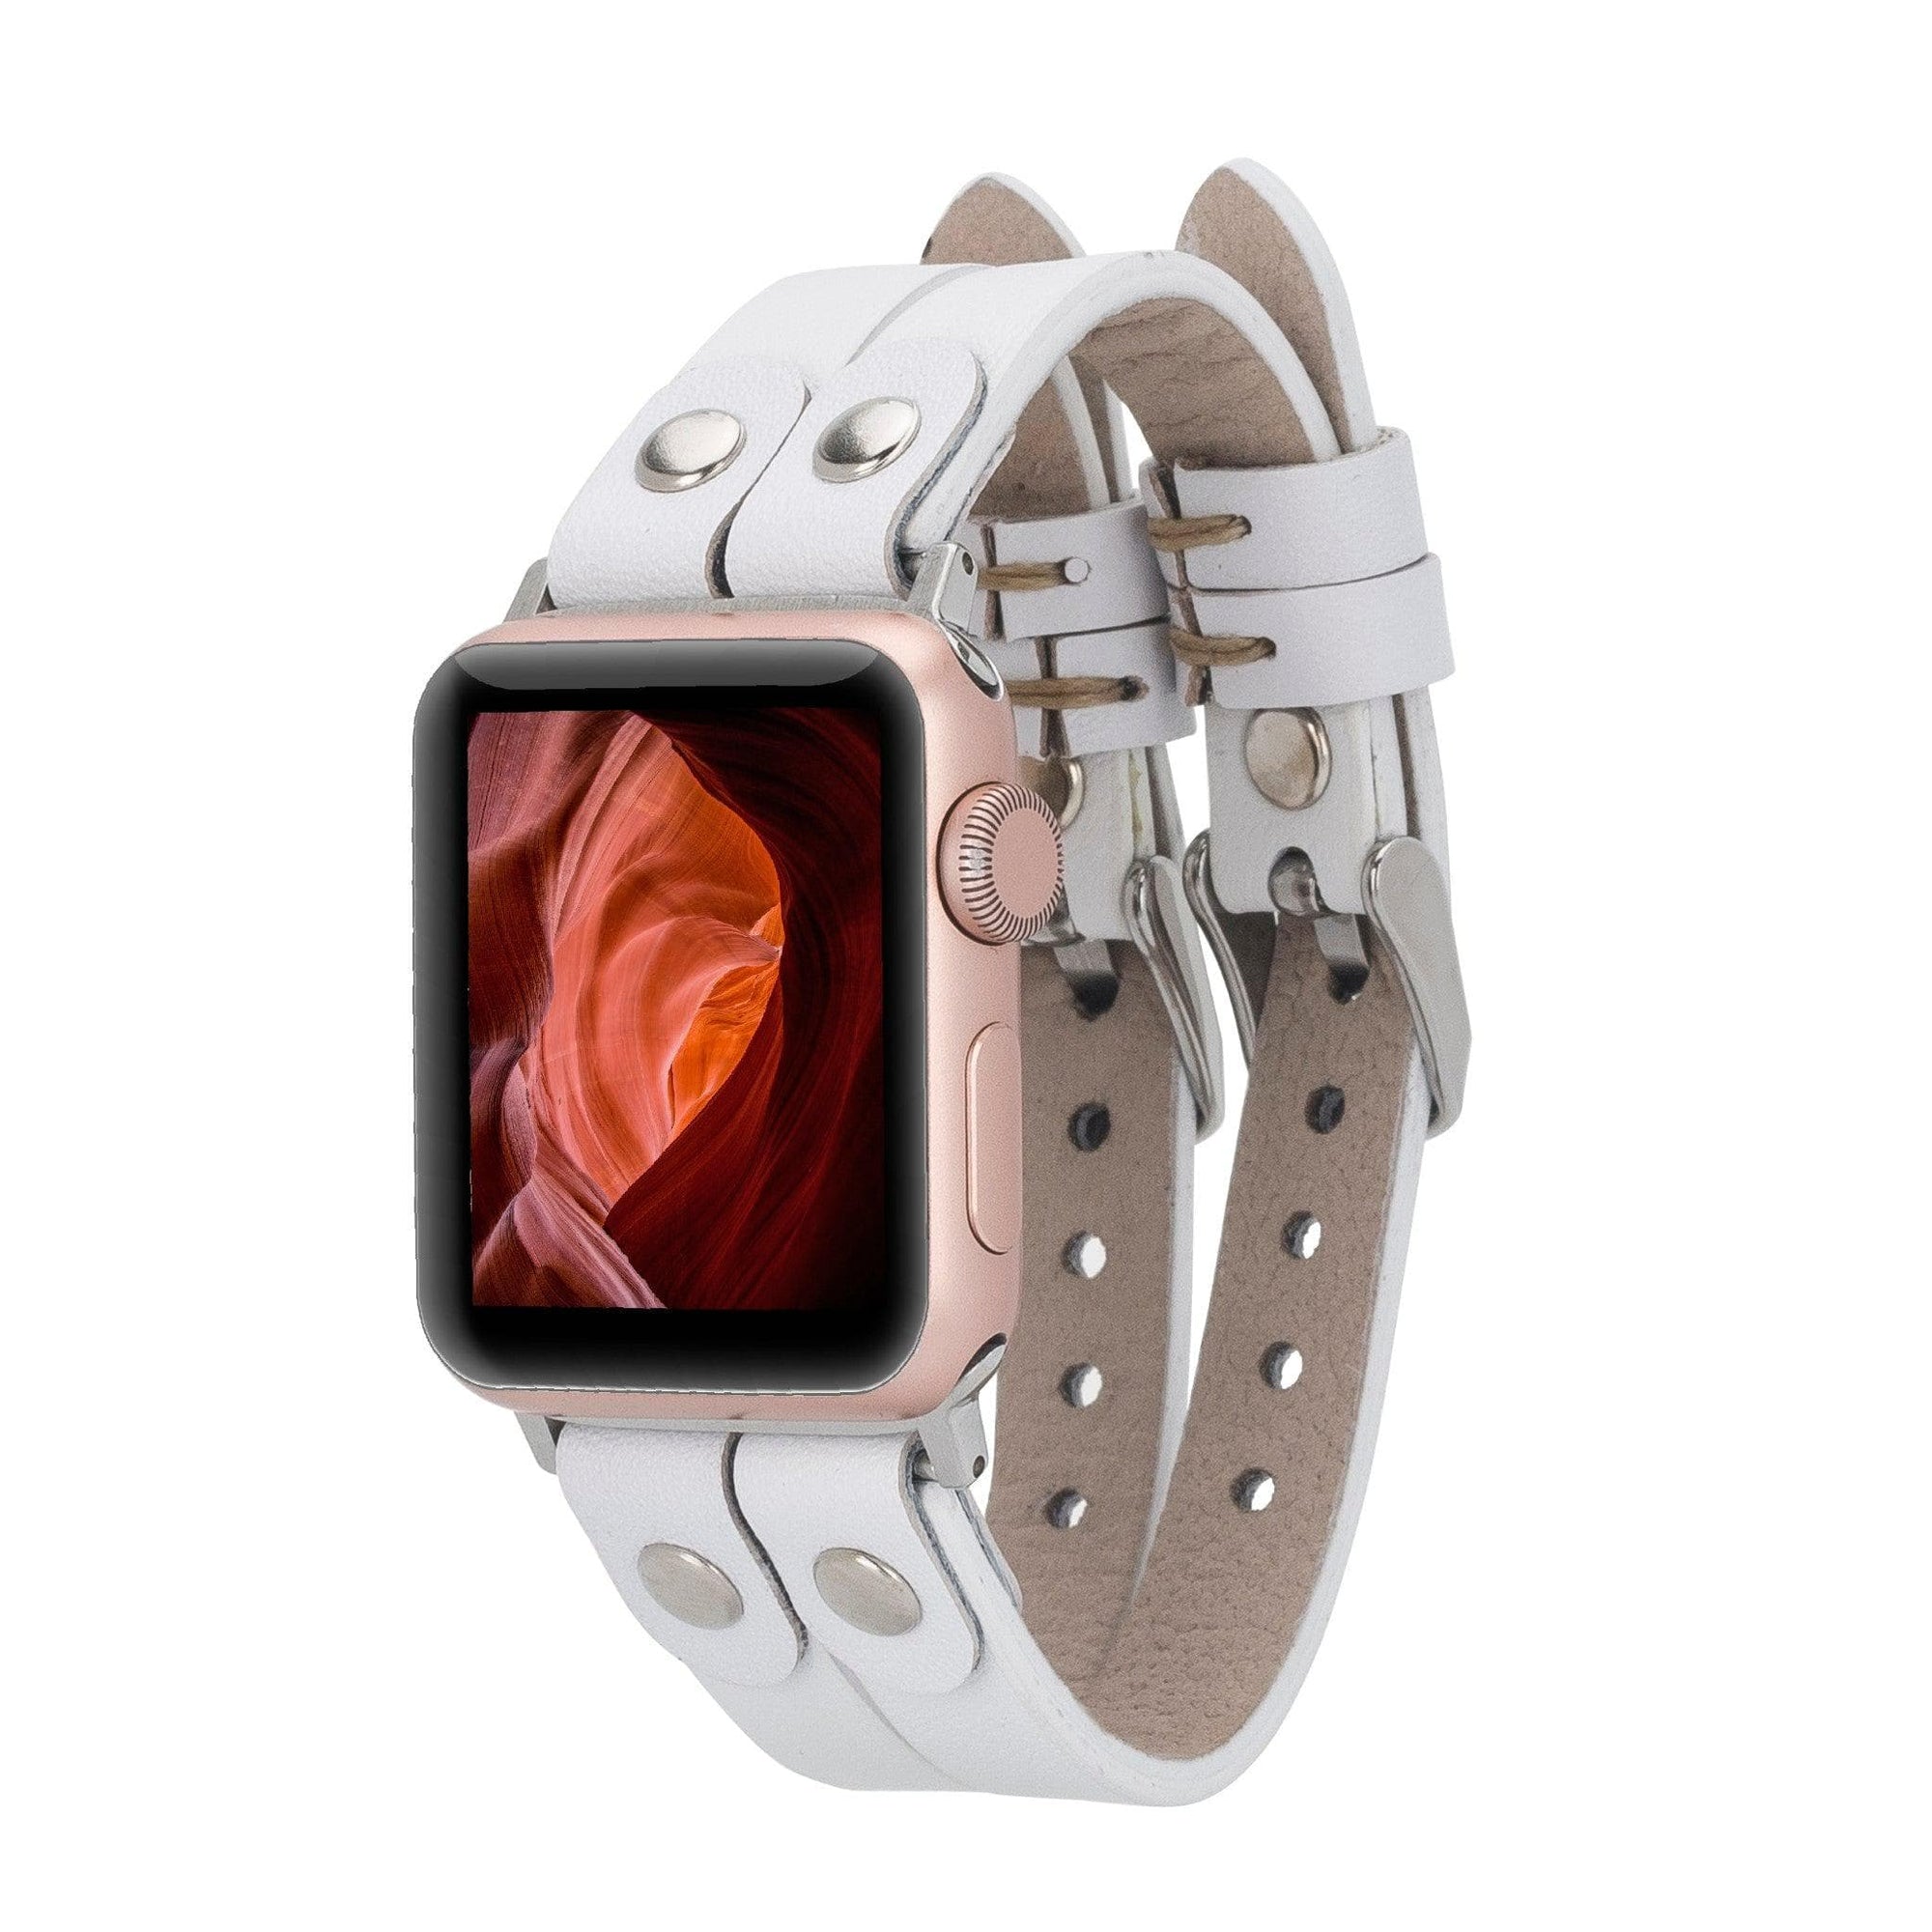 B2B- Durham Ely Apple Watch Leather Straps F3 / Silver Bouletta B2B